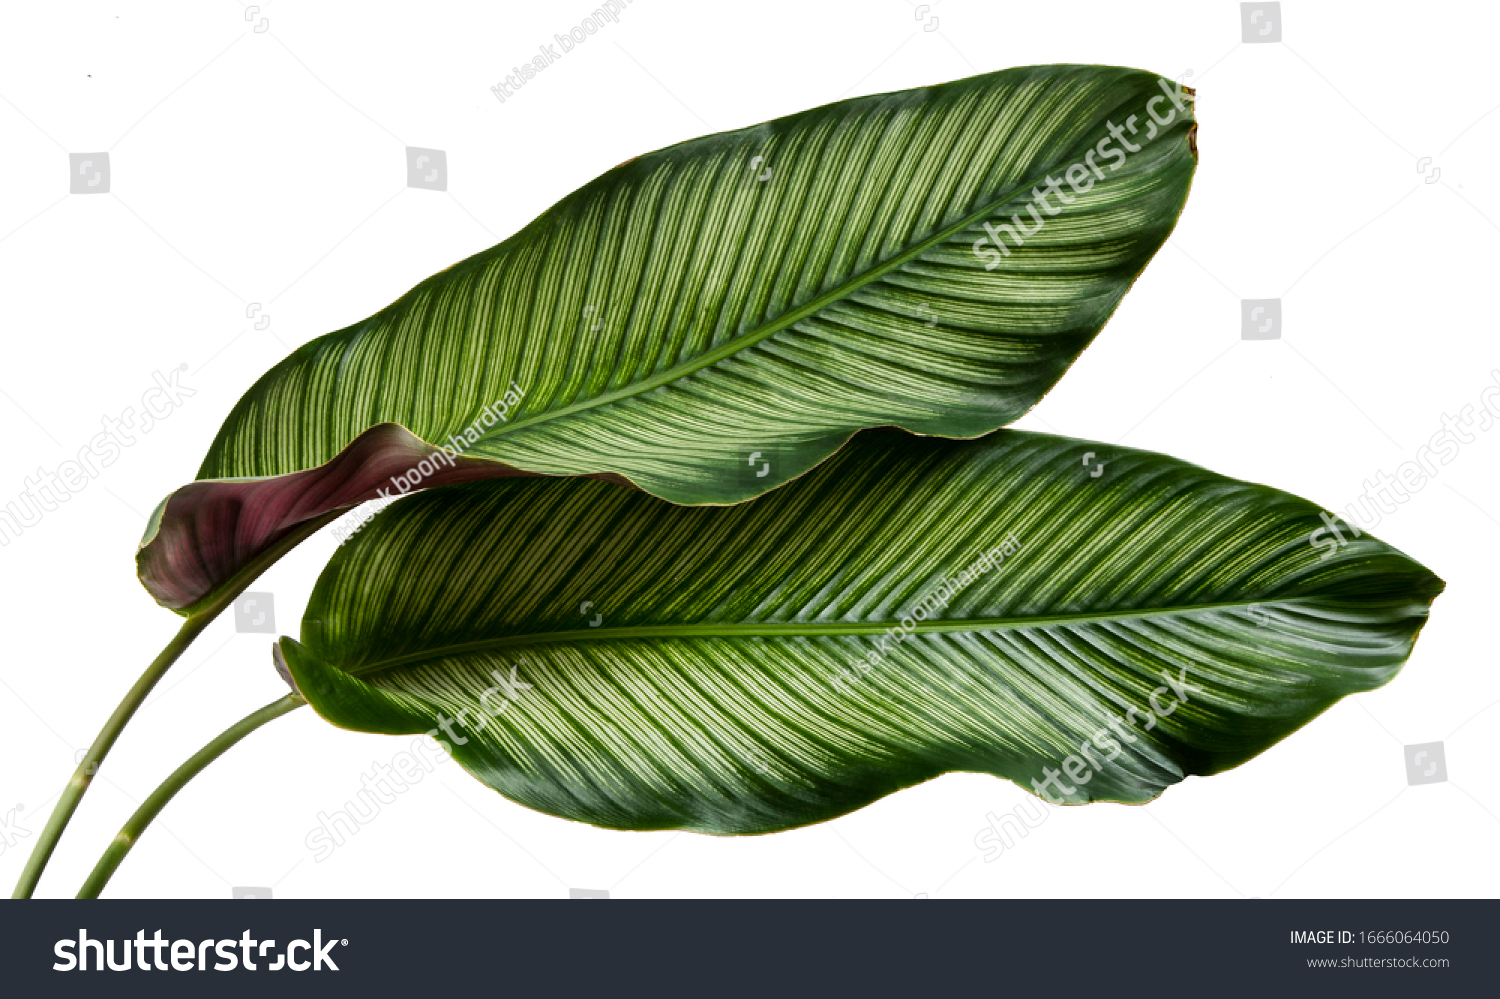 Calathea ornata leaves(Pin-stripe Calathea),Tropical foliage isolated on white background. #1666064050